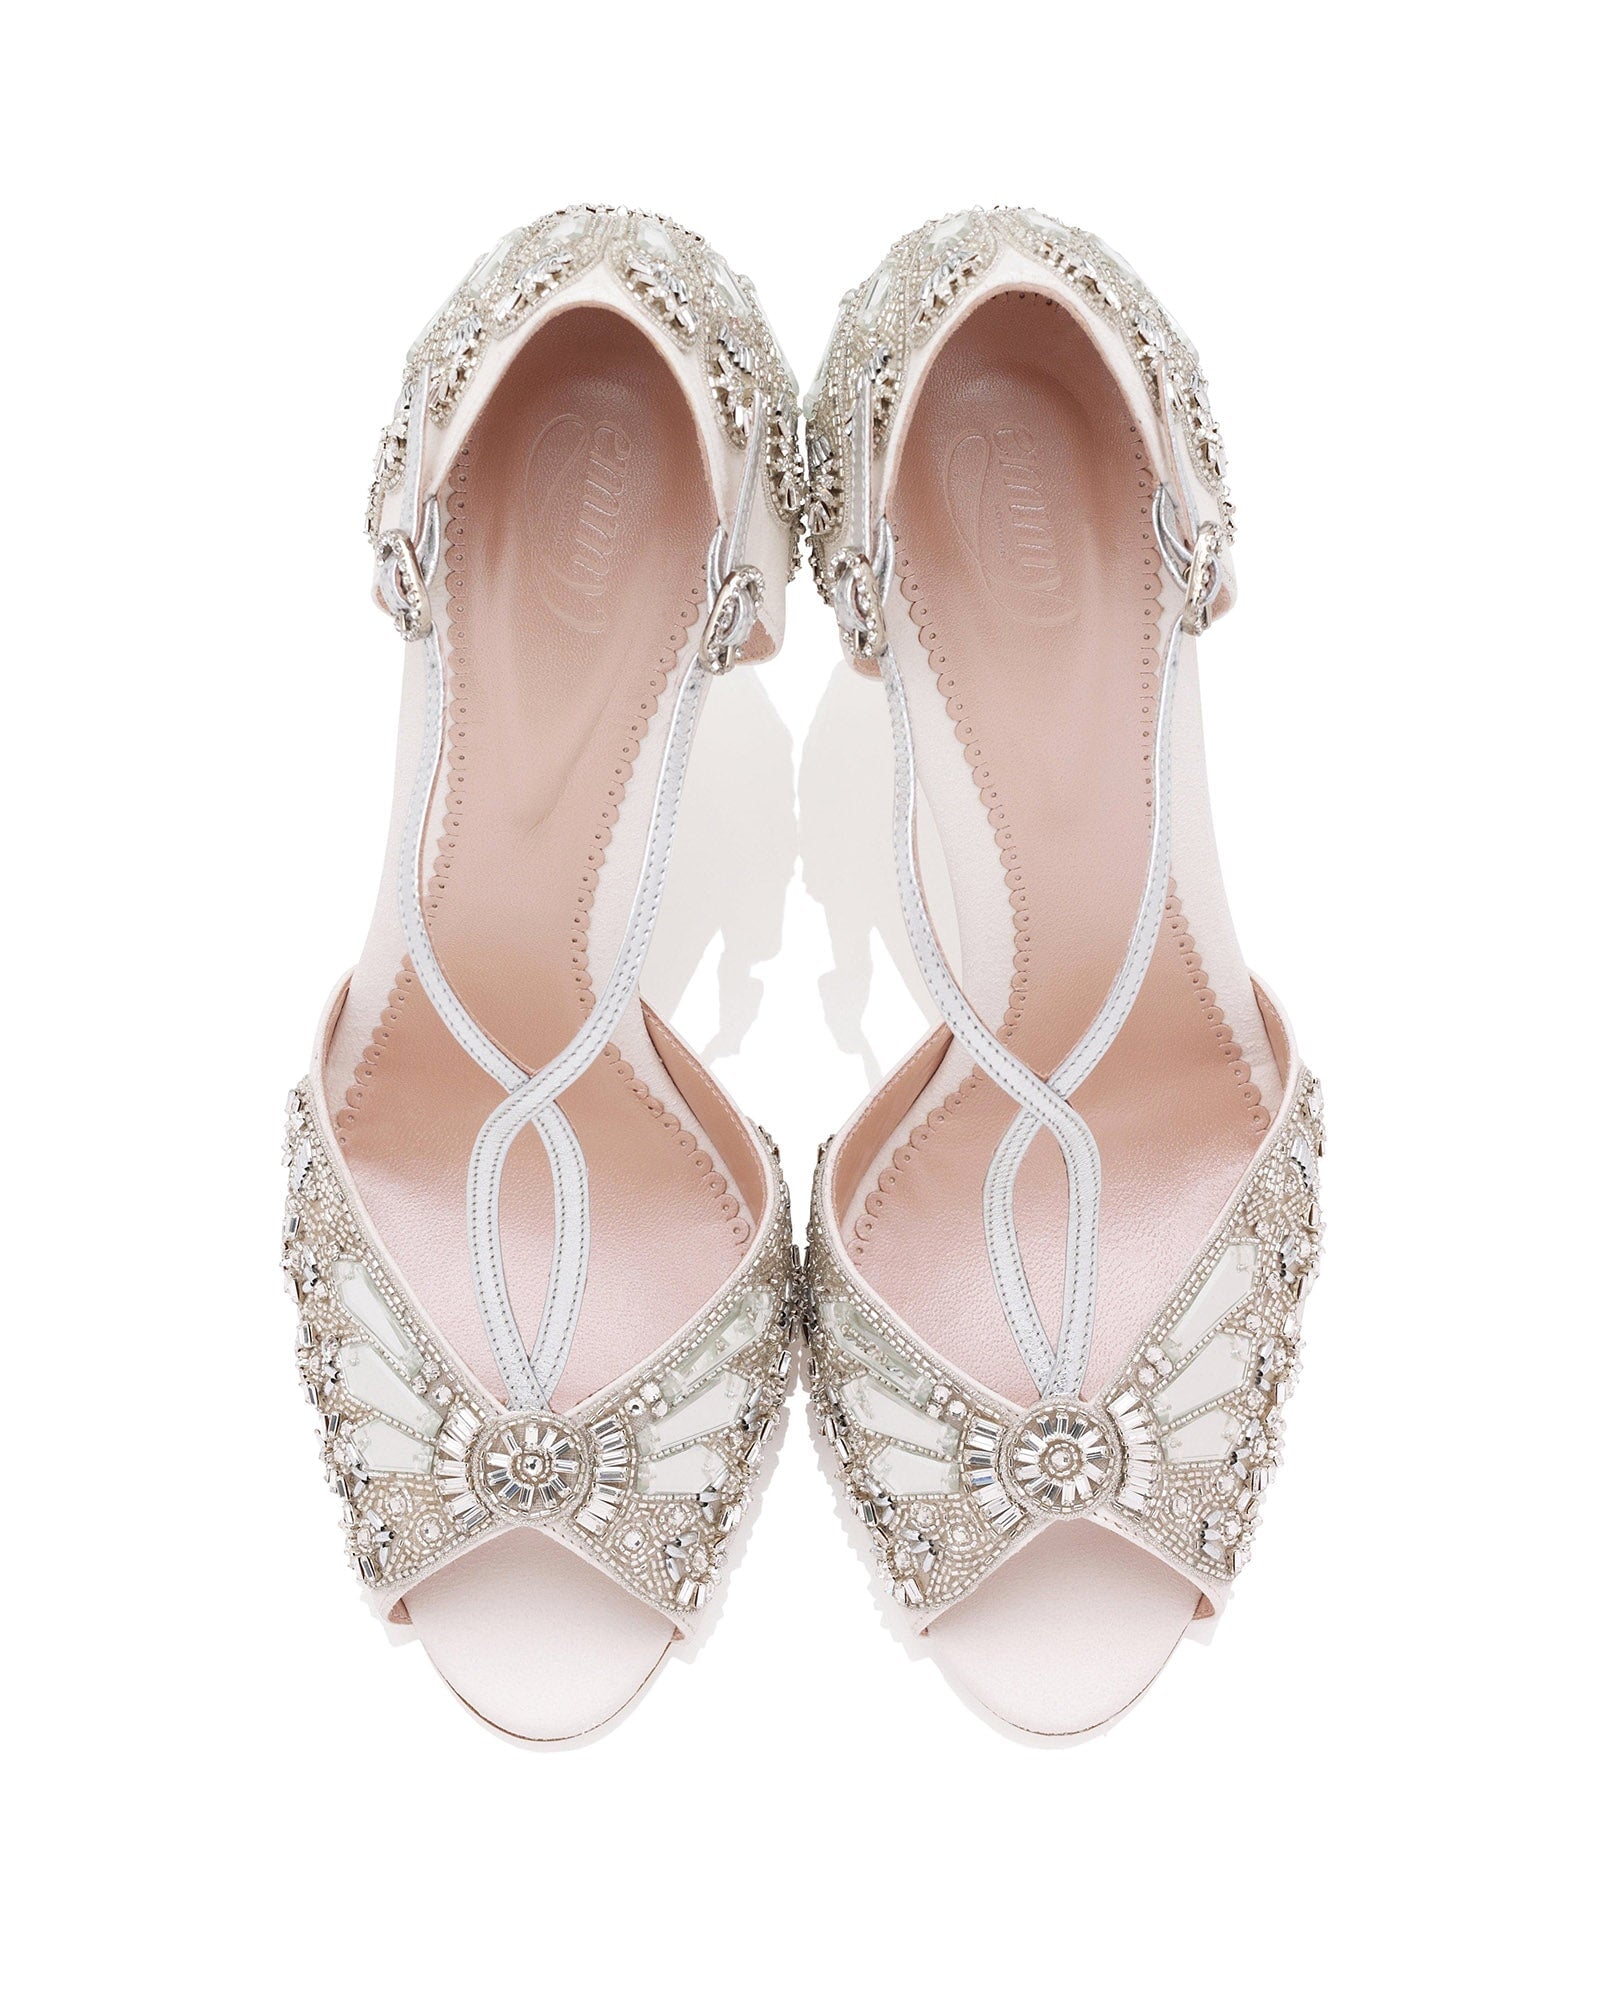 Cinderella Bridal Shoe Embellished Ivory Bridal Sandals  image